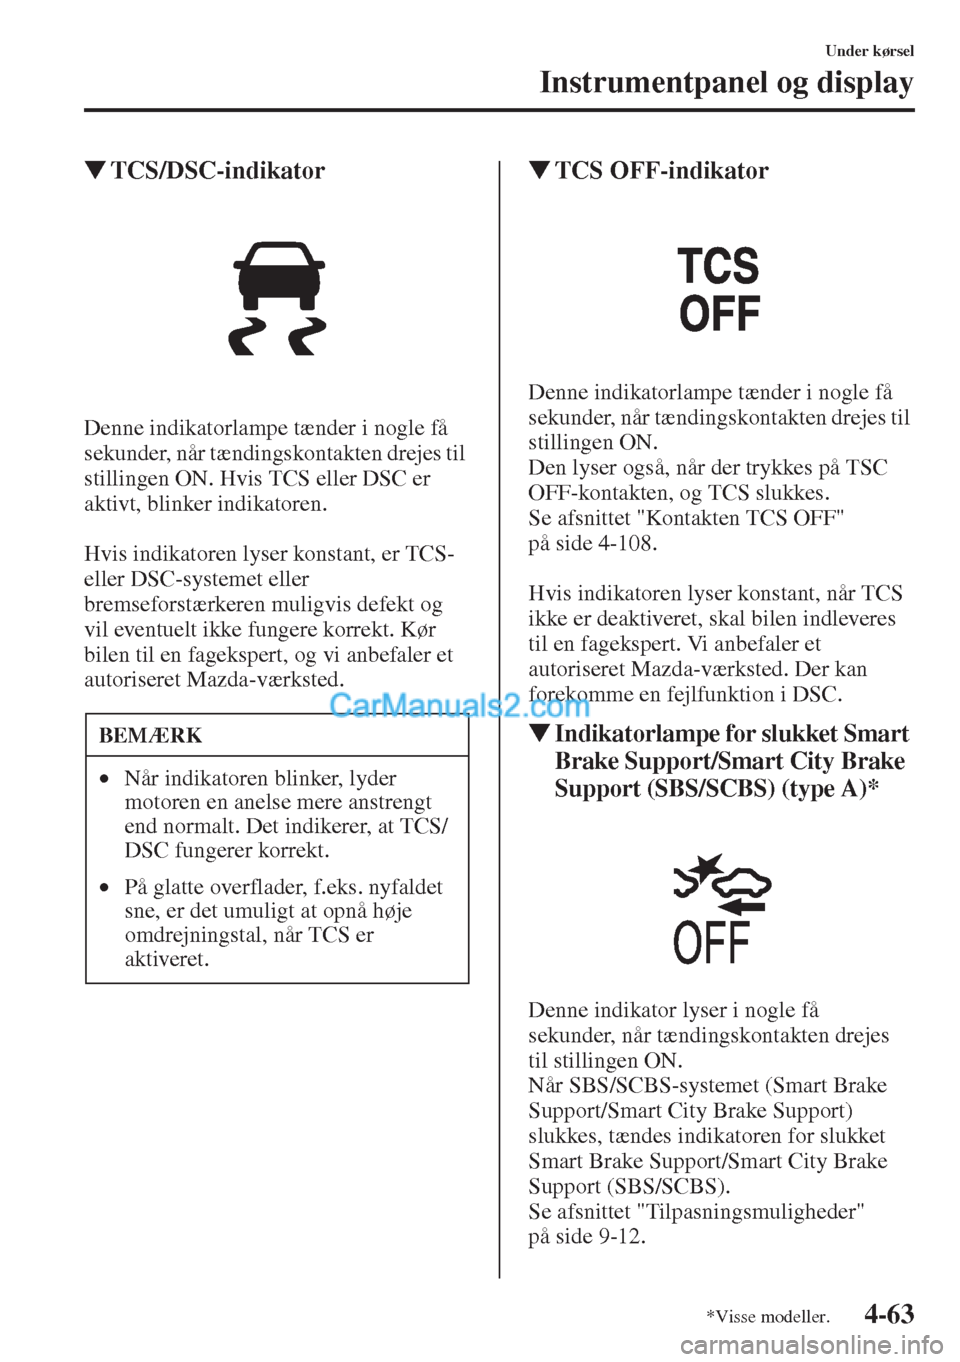 MAZDA MODEL CX-5 2015  Instruktionsbog (in Danish) 4-63
Under kørsel
Instrumentpanel og display
�WTCS/DSC-indikator
Denne indikatorlampe tænder i nogle få 
sekunder, når tændingskontakten drejes til 
stillingen ON. Hvis TCS eller DSC er 
aktivt, 